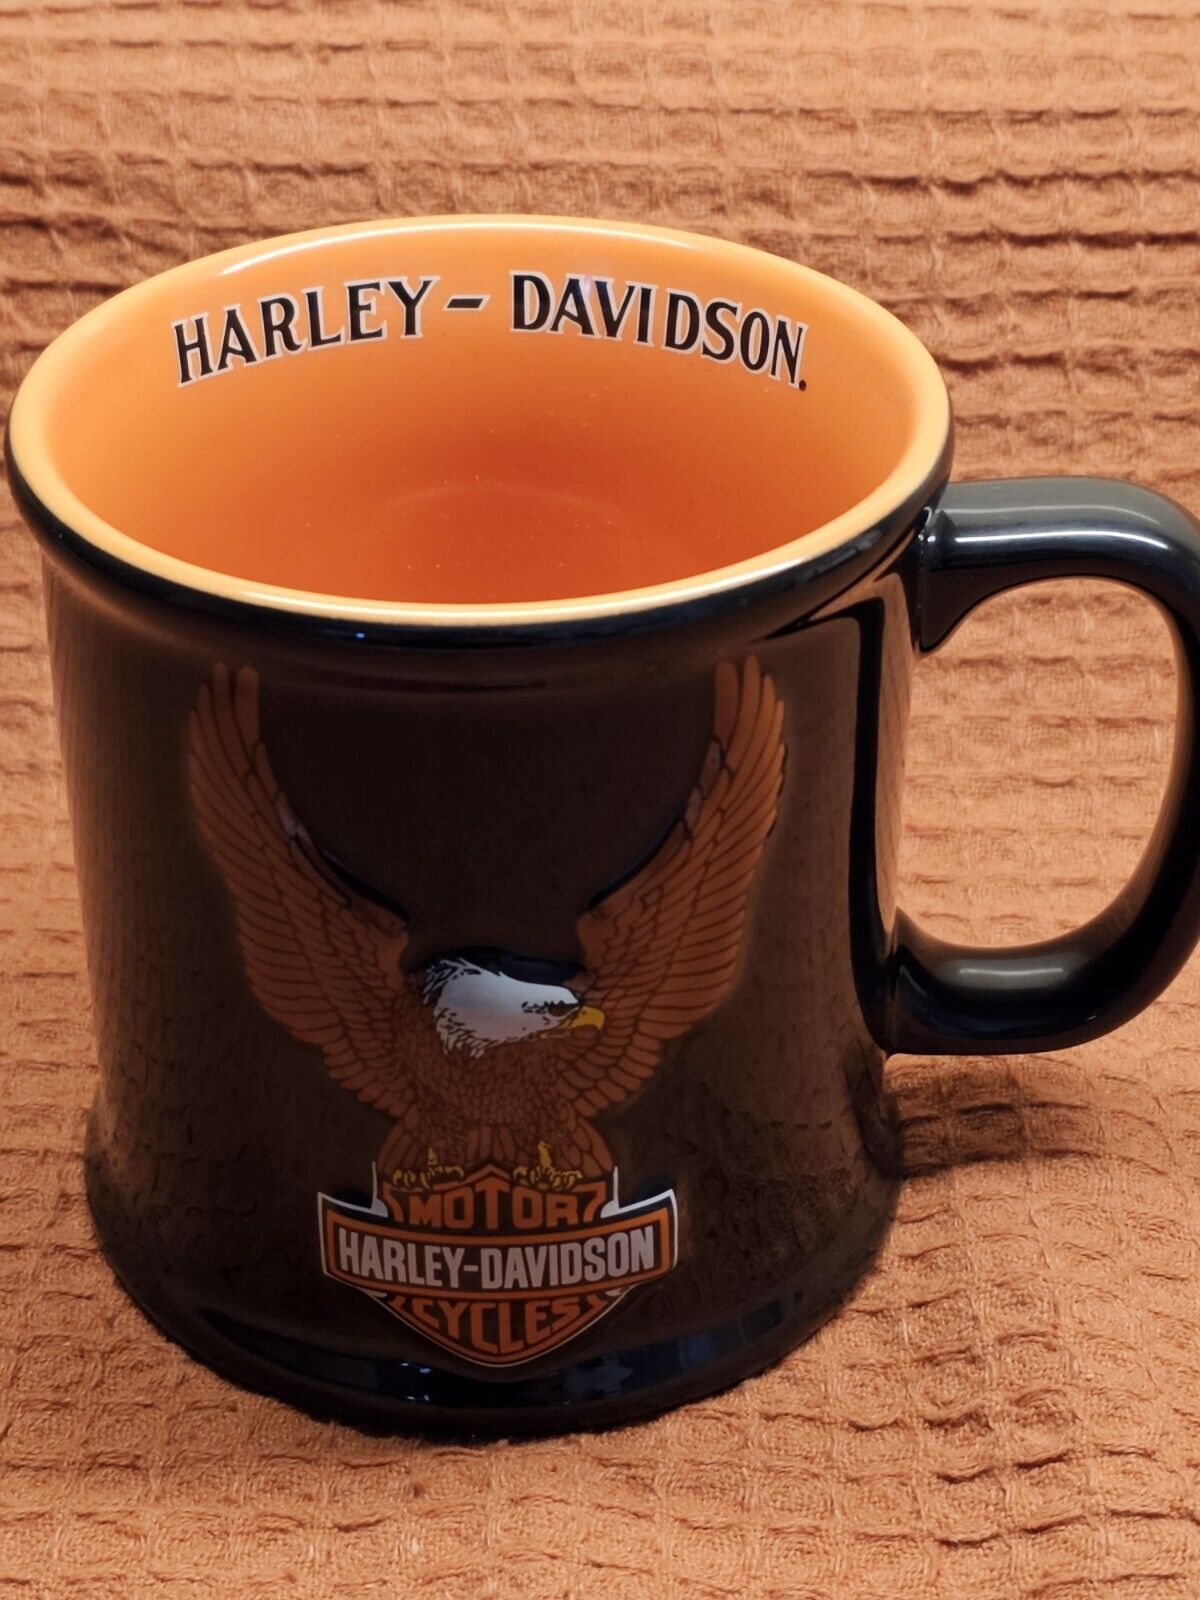 HARLEY DAVIDSON EAGLE 3D BLACK ORANGE MUG STEIN VTG 2000 OFFICIAL LICENSED